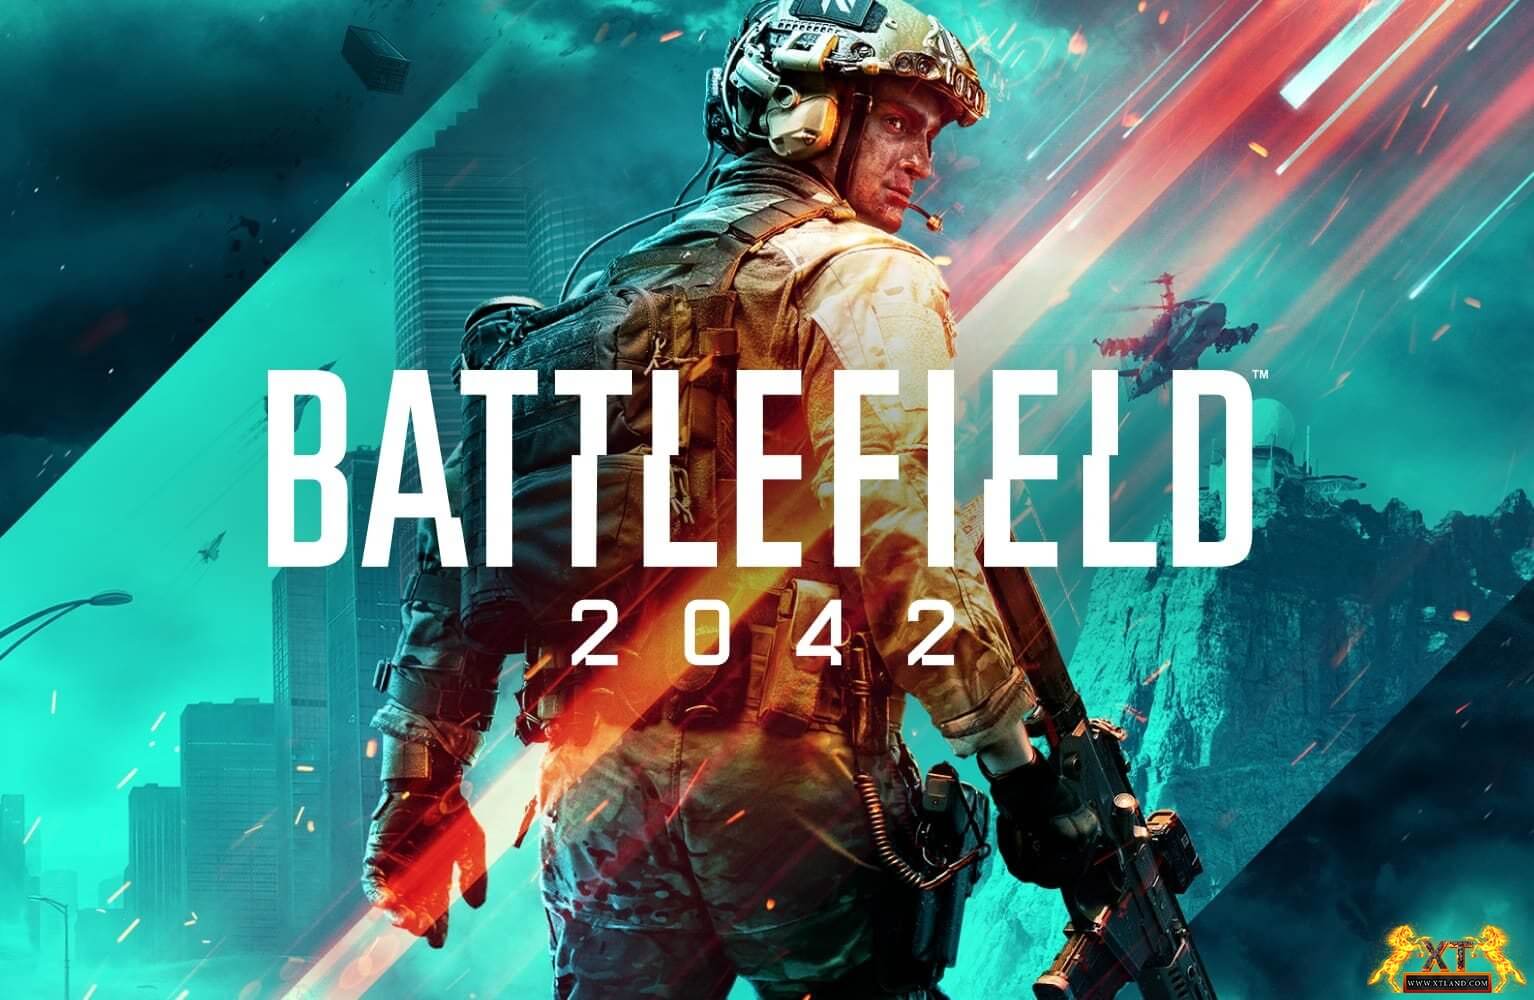 تیزر تریلری از گیم پلی Battlefield 2042 منتشر شد!